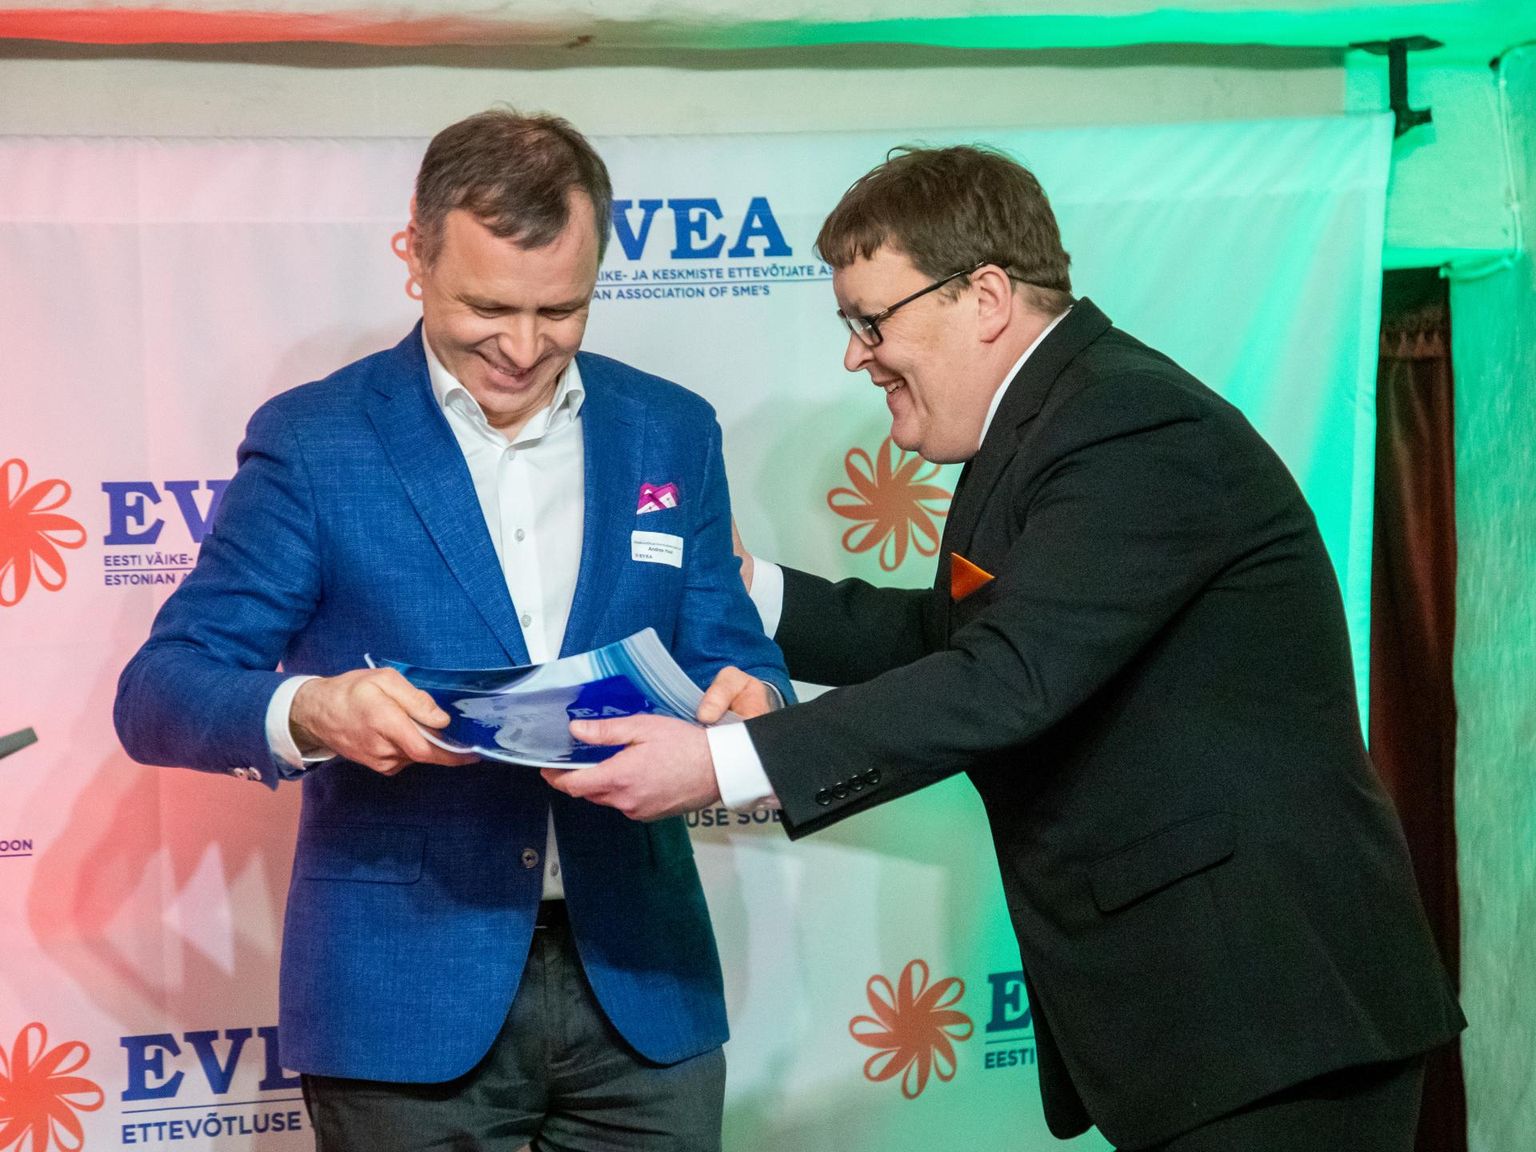 EVEA aasta väikeettevõtjate gala. Kategoorias "Ettevõtluse sõber 2019" võitis maakondlike arenduskeskuste võrgustik.